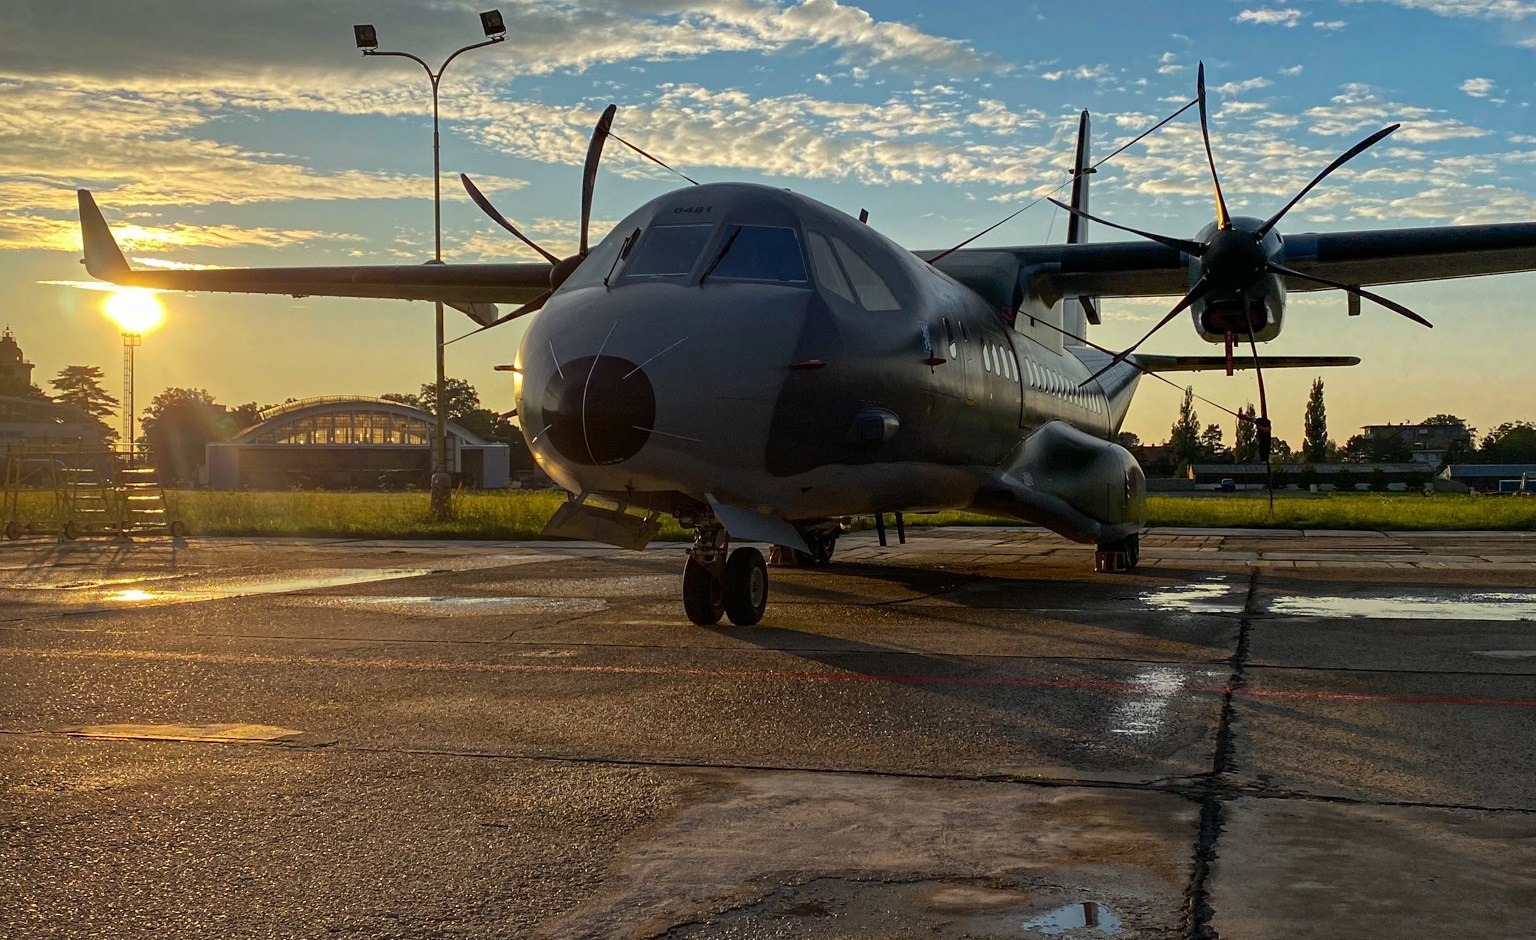 Czech Air Force Receives Second Modernized C295MW Medium Airlifter